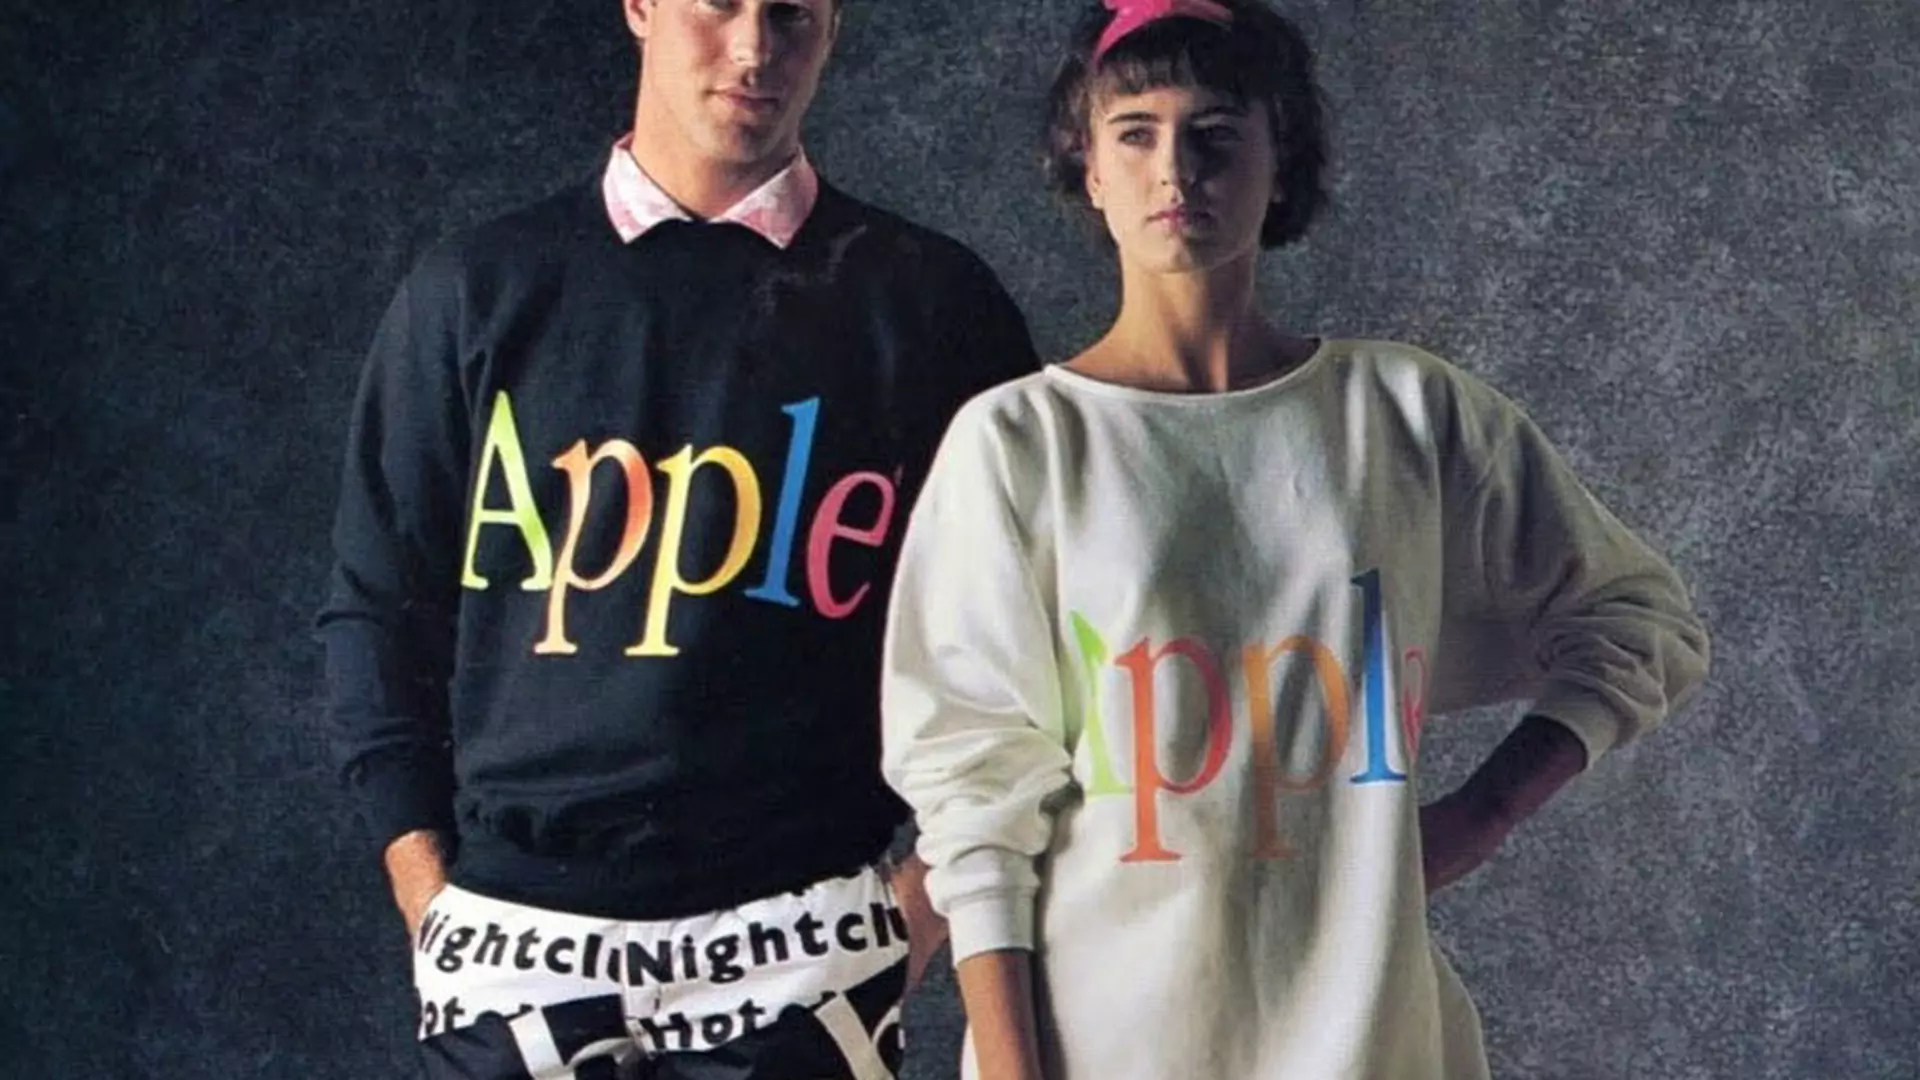 Wiedziałeś, że w 1986 roku Apple projektowało ubrania? Dziś byłyby sprzedażowym hitem